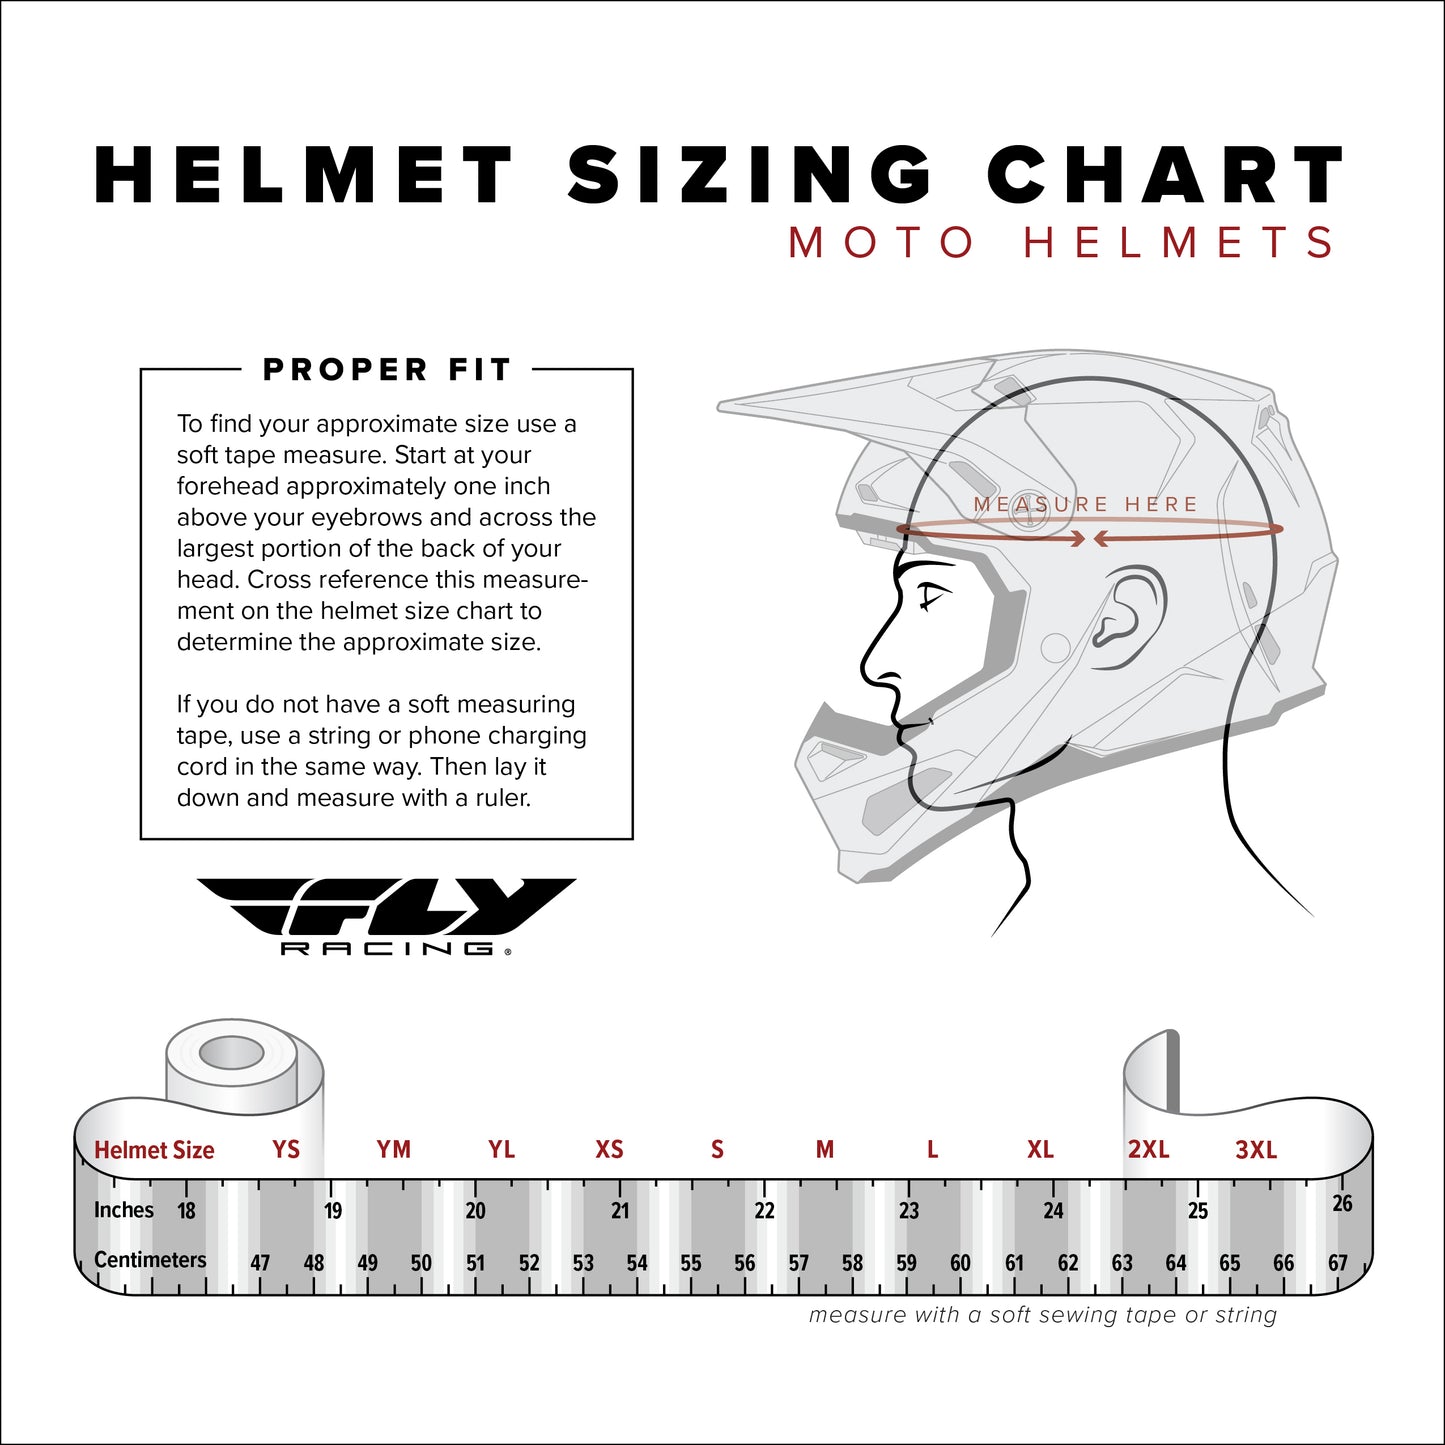 Fly Racing Helmet Werx-R Carbon